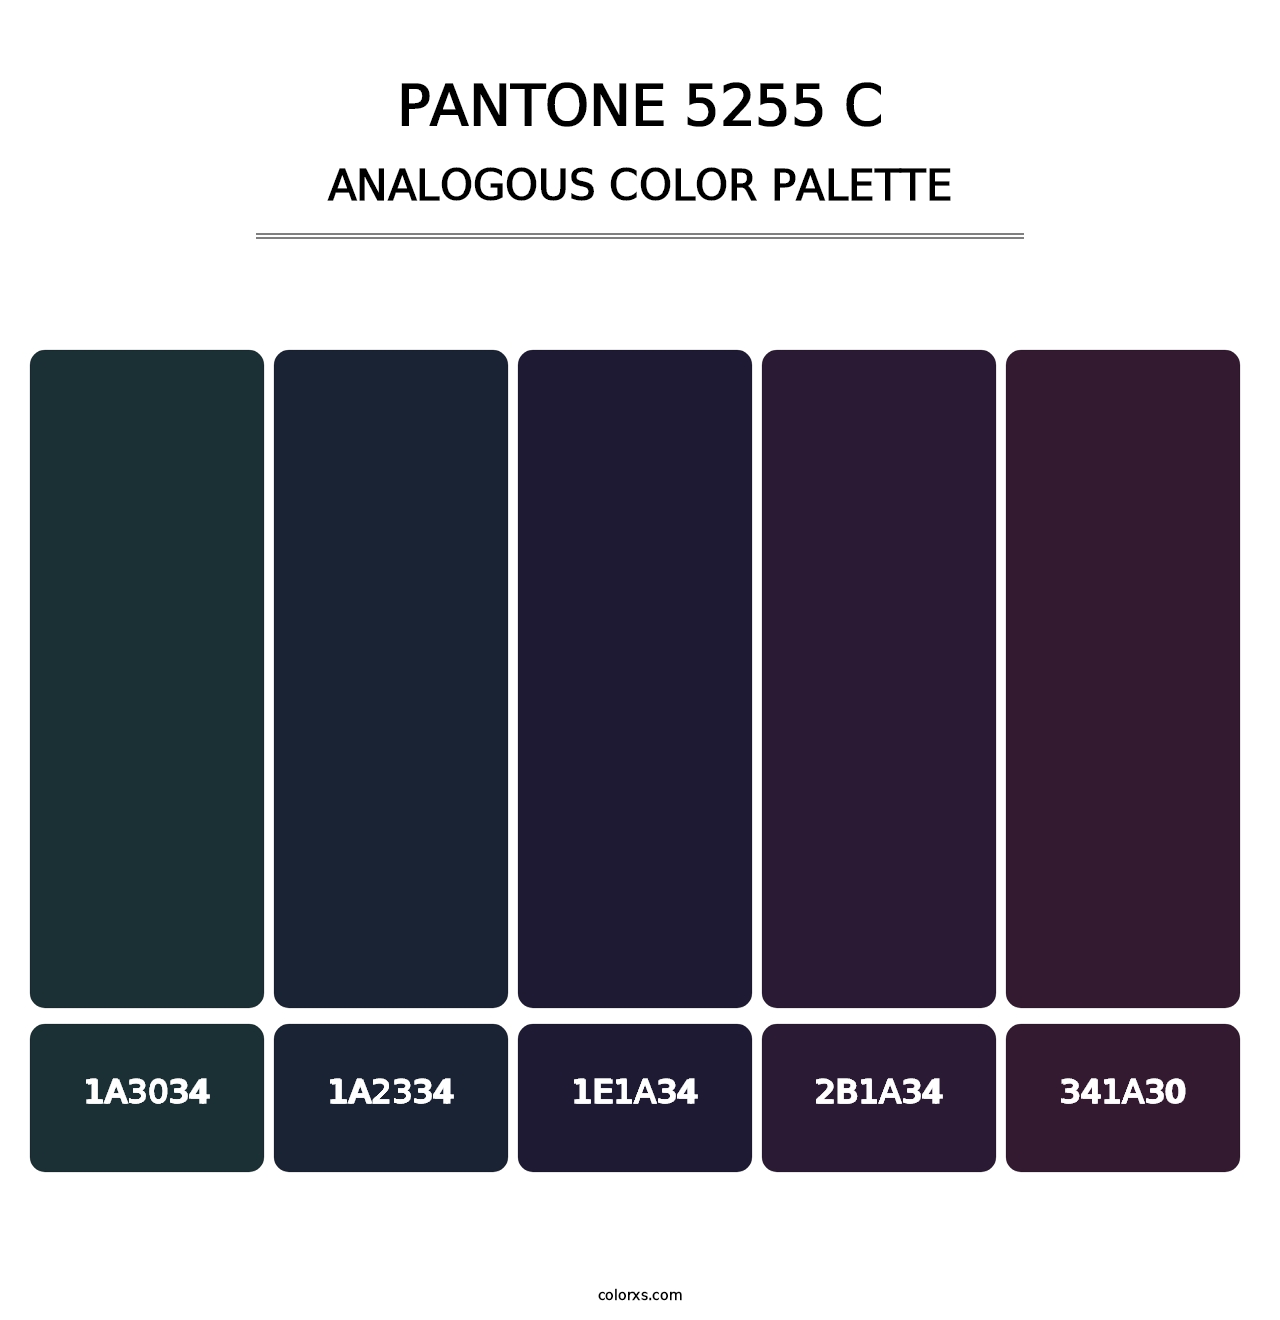 PANTONE 5255 C - Analogous Color Palette